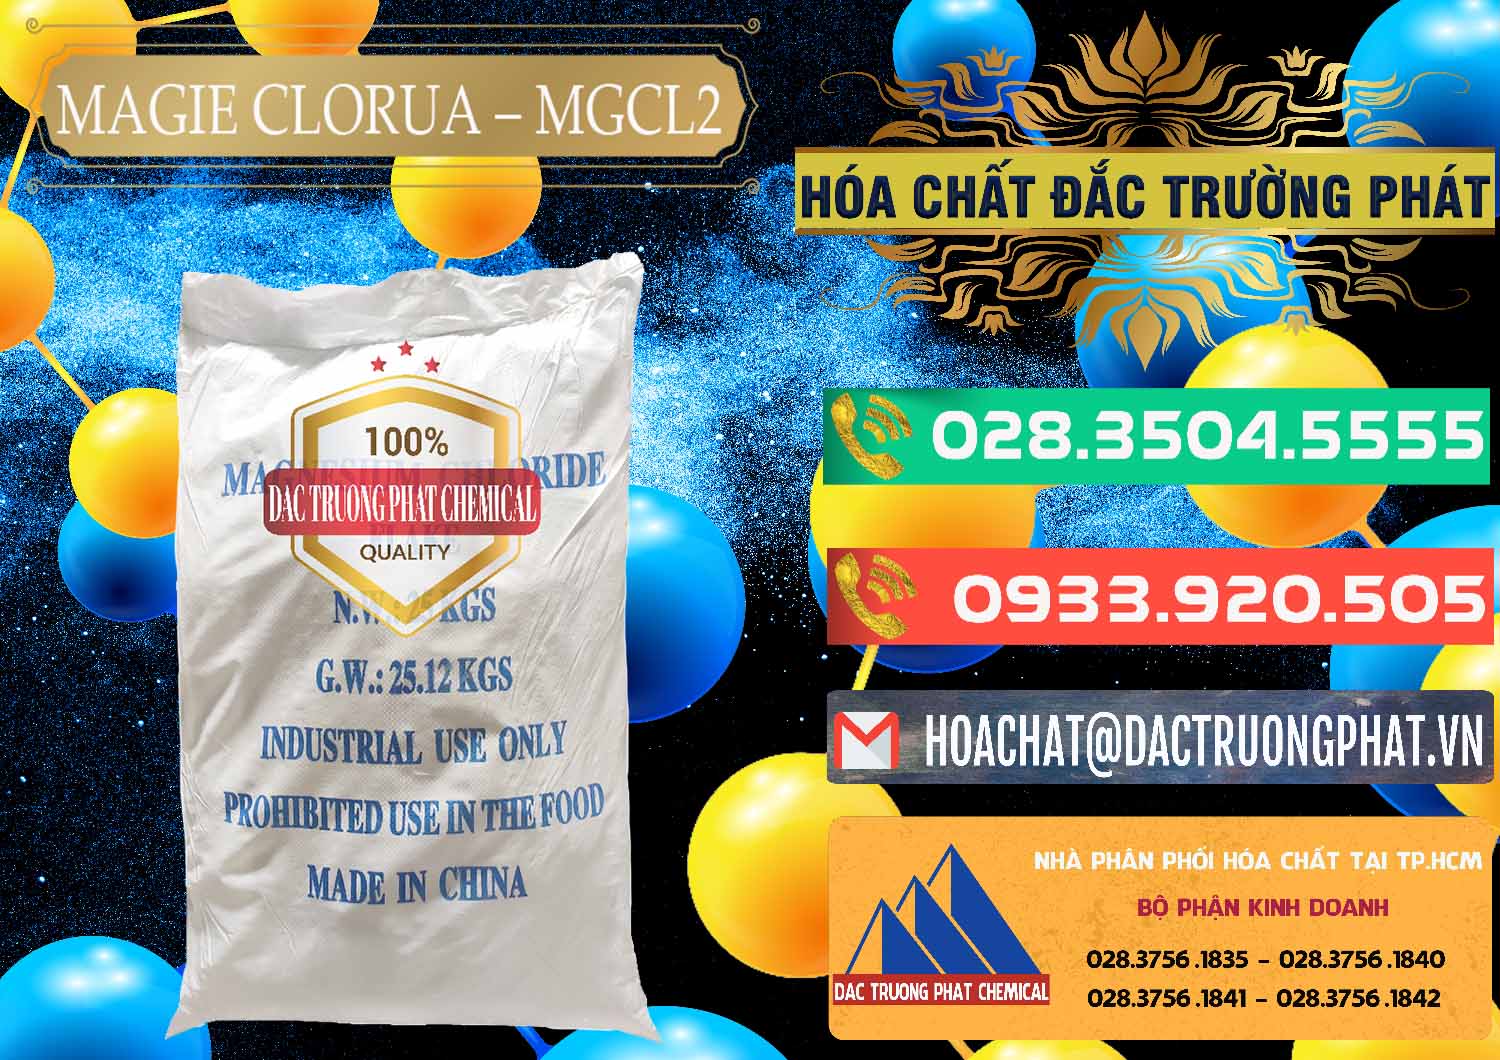 Đơn vị cung cấp & bán Magie Clorua – MGCL2 96% Dạng Vảy Trung Quốc China - 0091 - Cty cung ứng ( phân phối ) hóa chất tại TP.HCM - congtyhoachat.com.vn